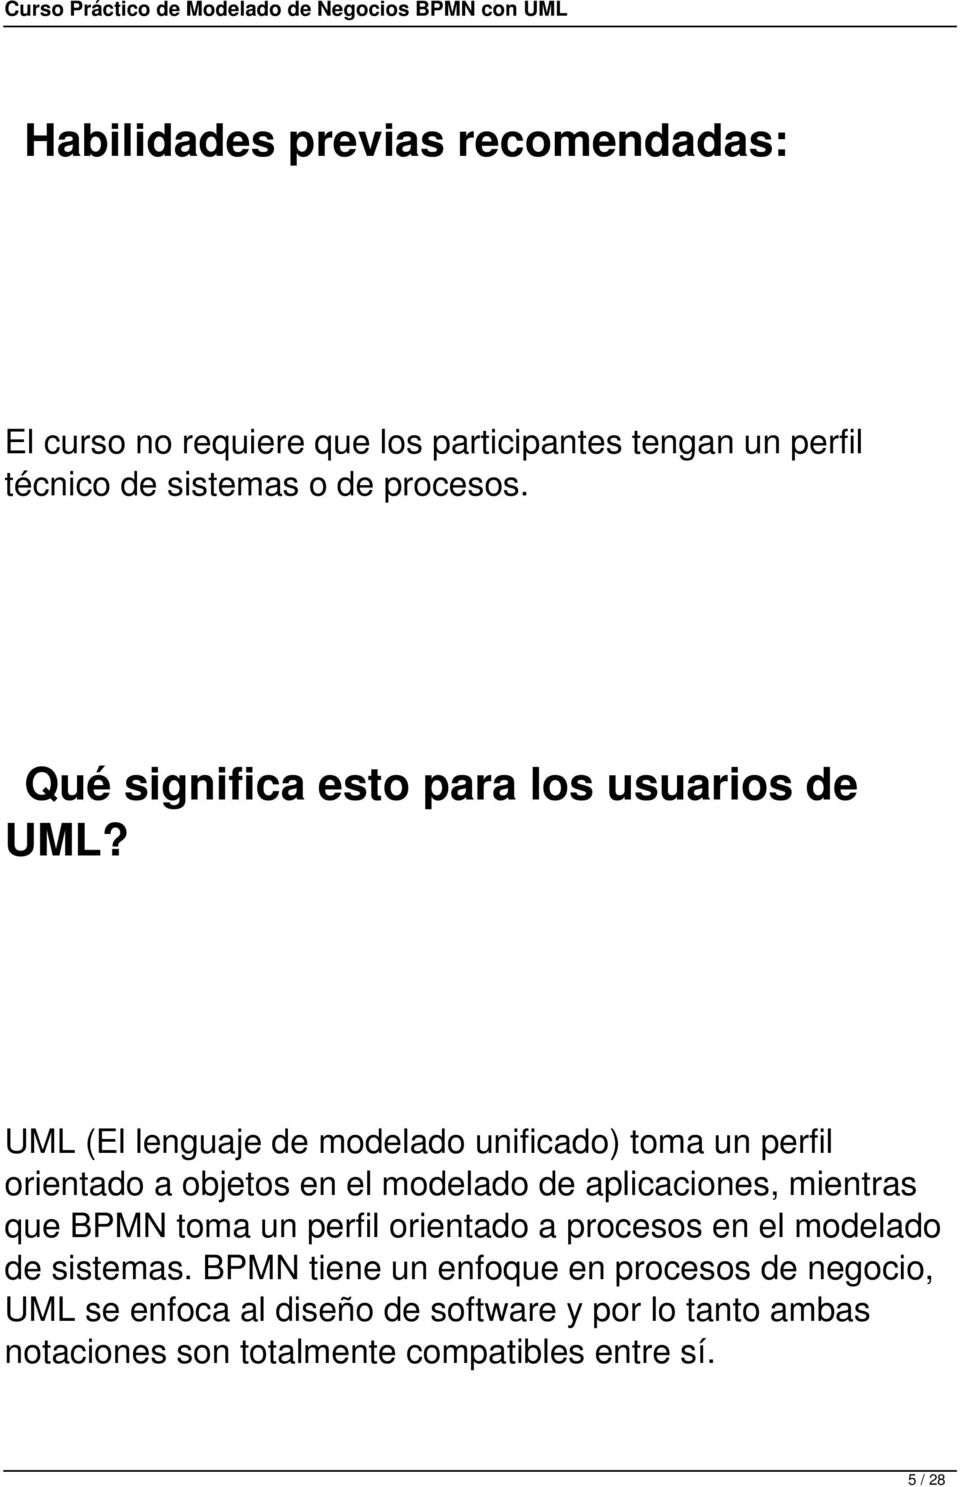 UML (El lenguaje de modelado unificado) toma un perfil orientado a objetos en el modelado de aplicaciones, mientras que BPMN toma